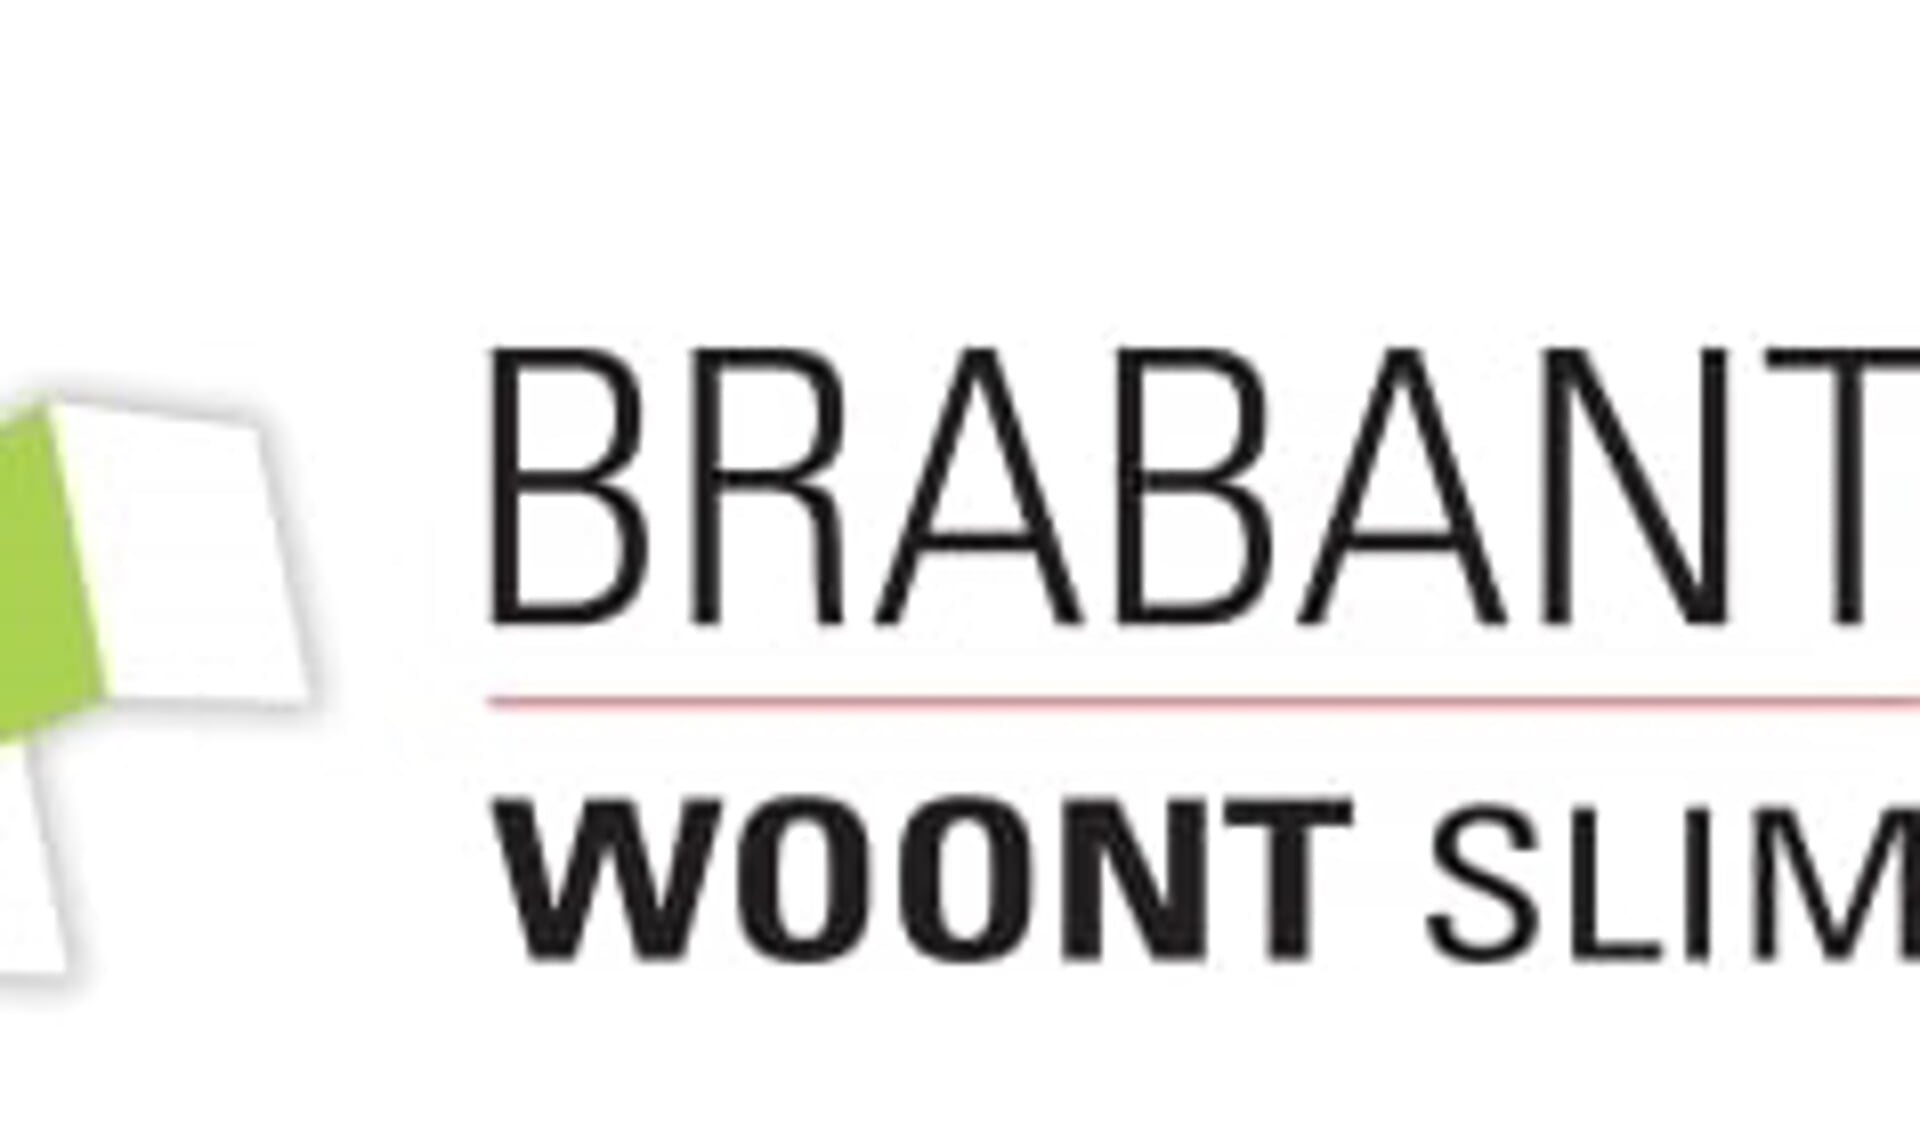 De gemeente Meierijstad sluit aan bij Brabant Woont Slim.